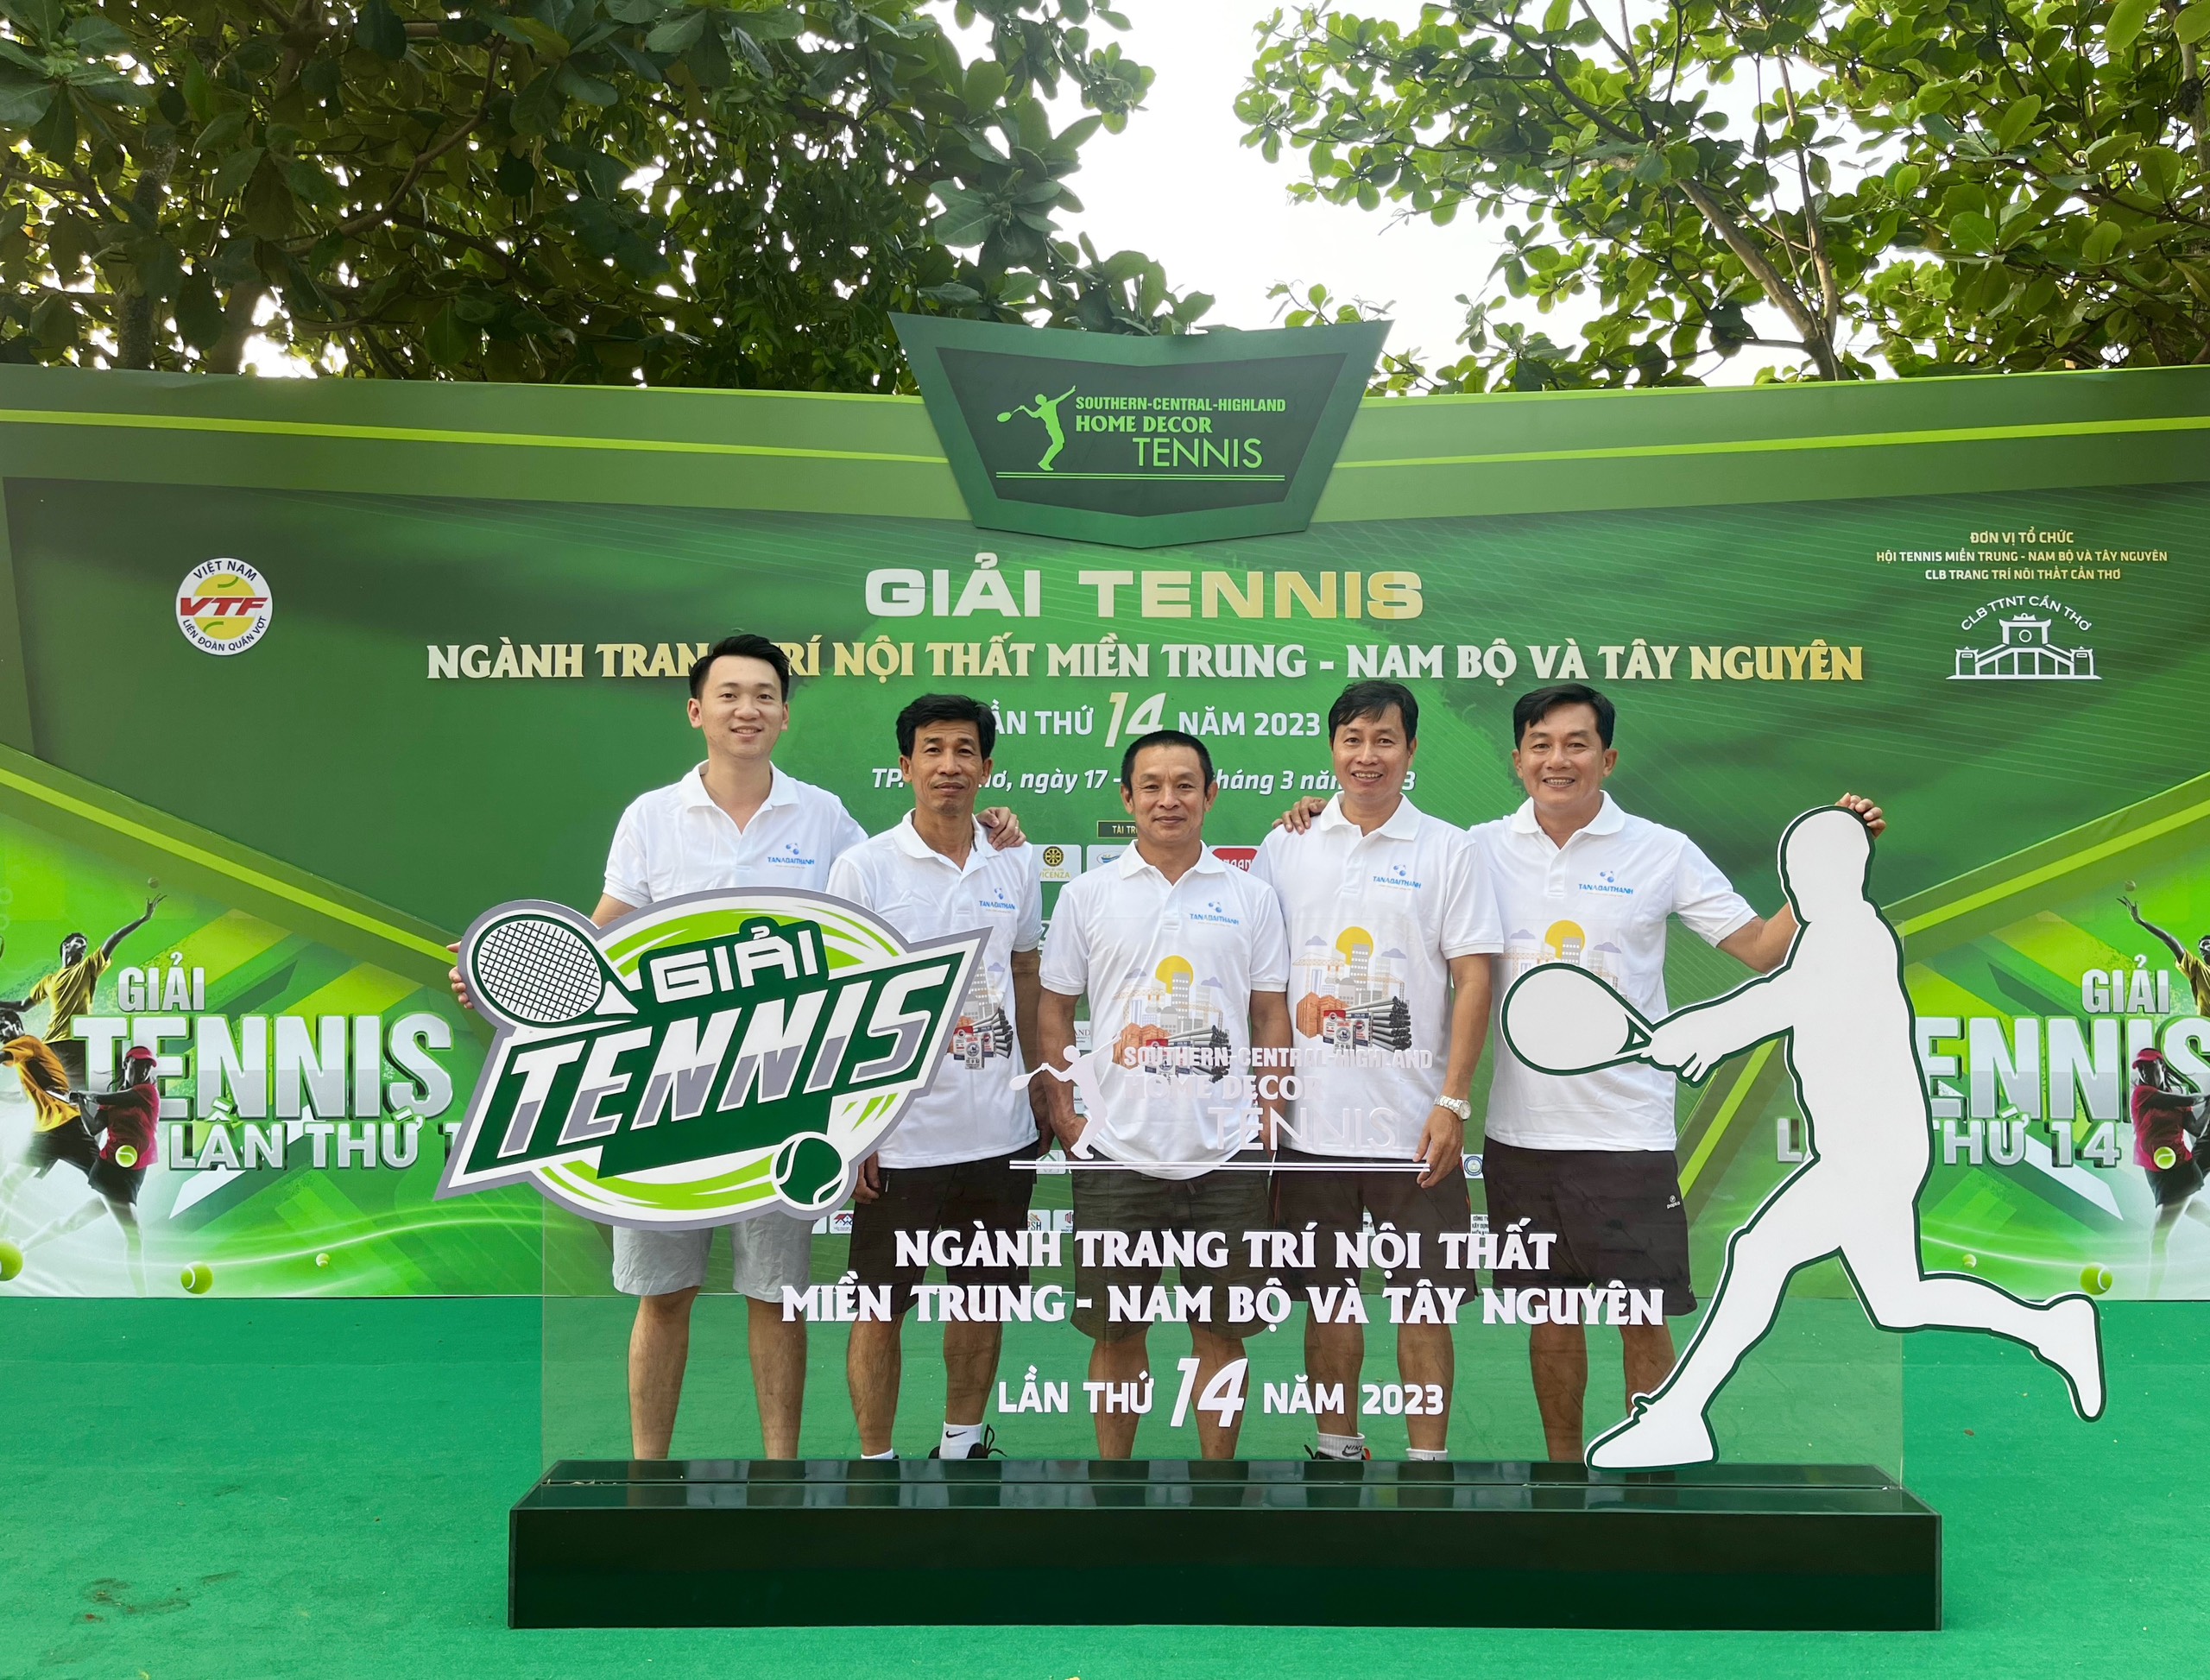 Tân Á Đại Thành đồng hành cùng Giải Tennis ngành Trang trí nội thất miền Trung – Nam Bộ và Tây Nguyên